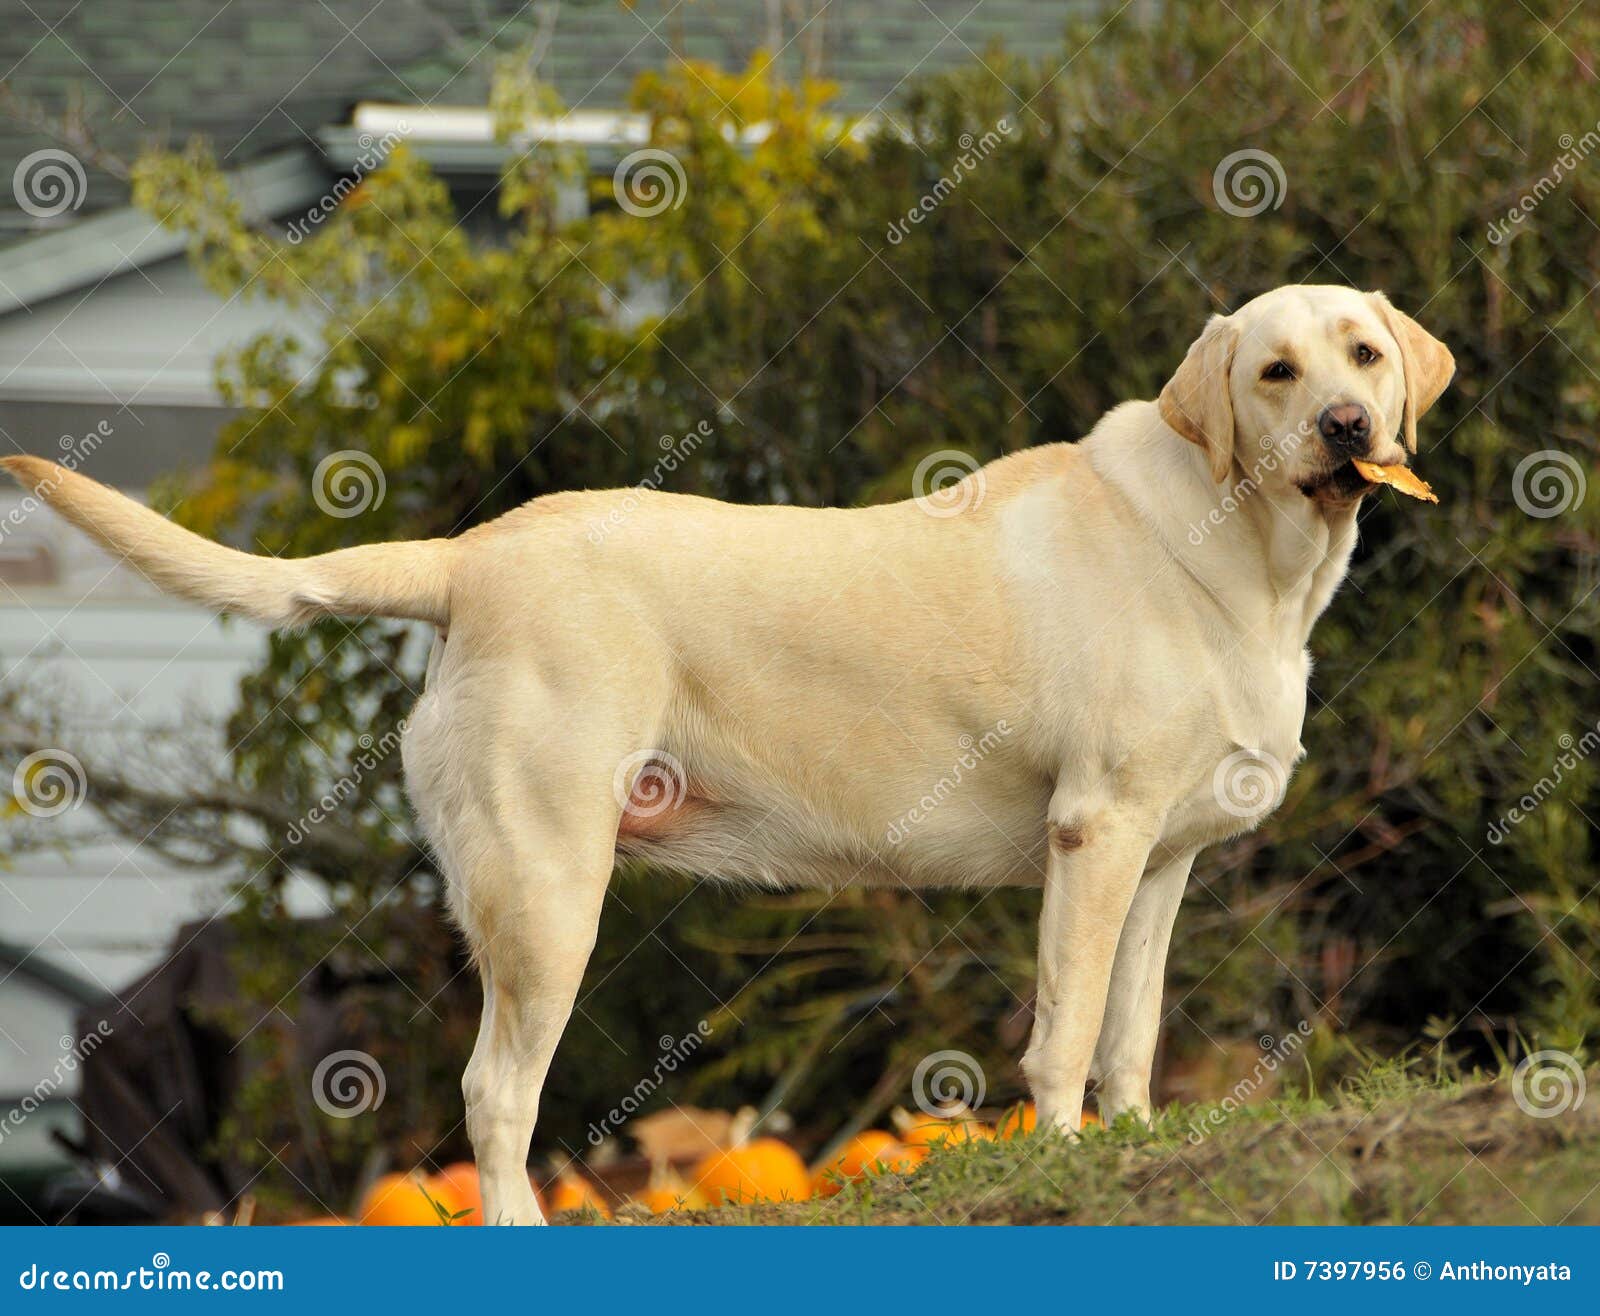 Yellow Labrador Dogs